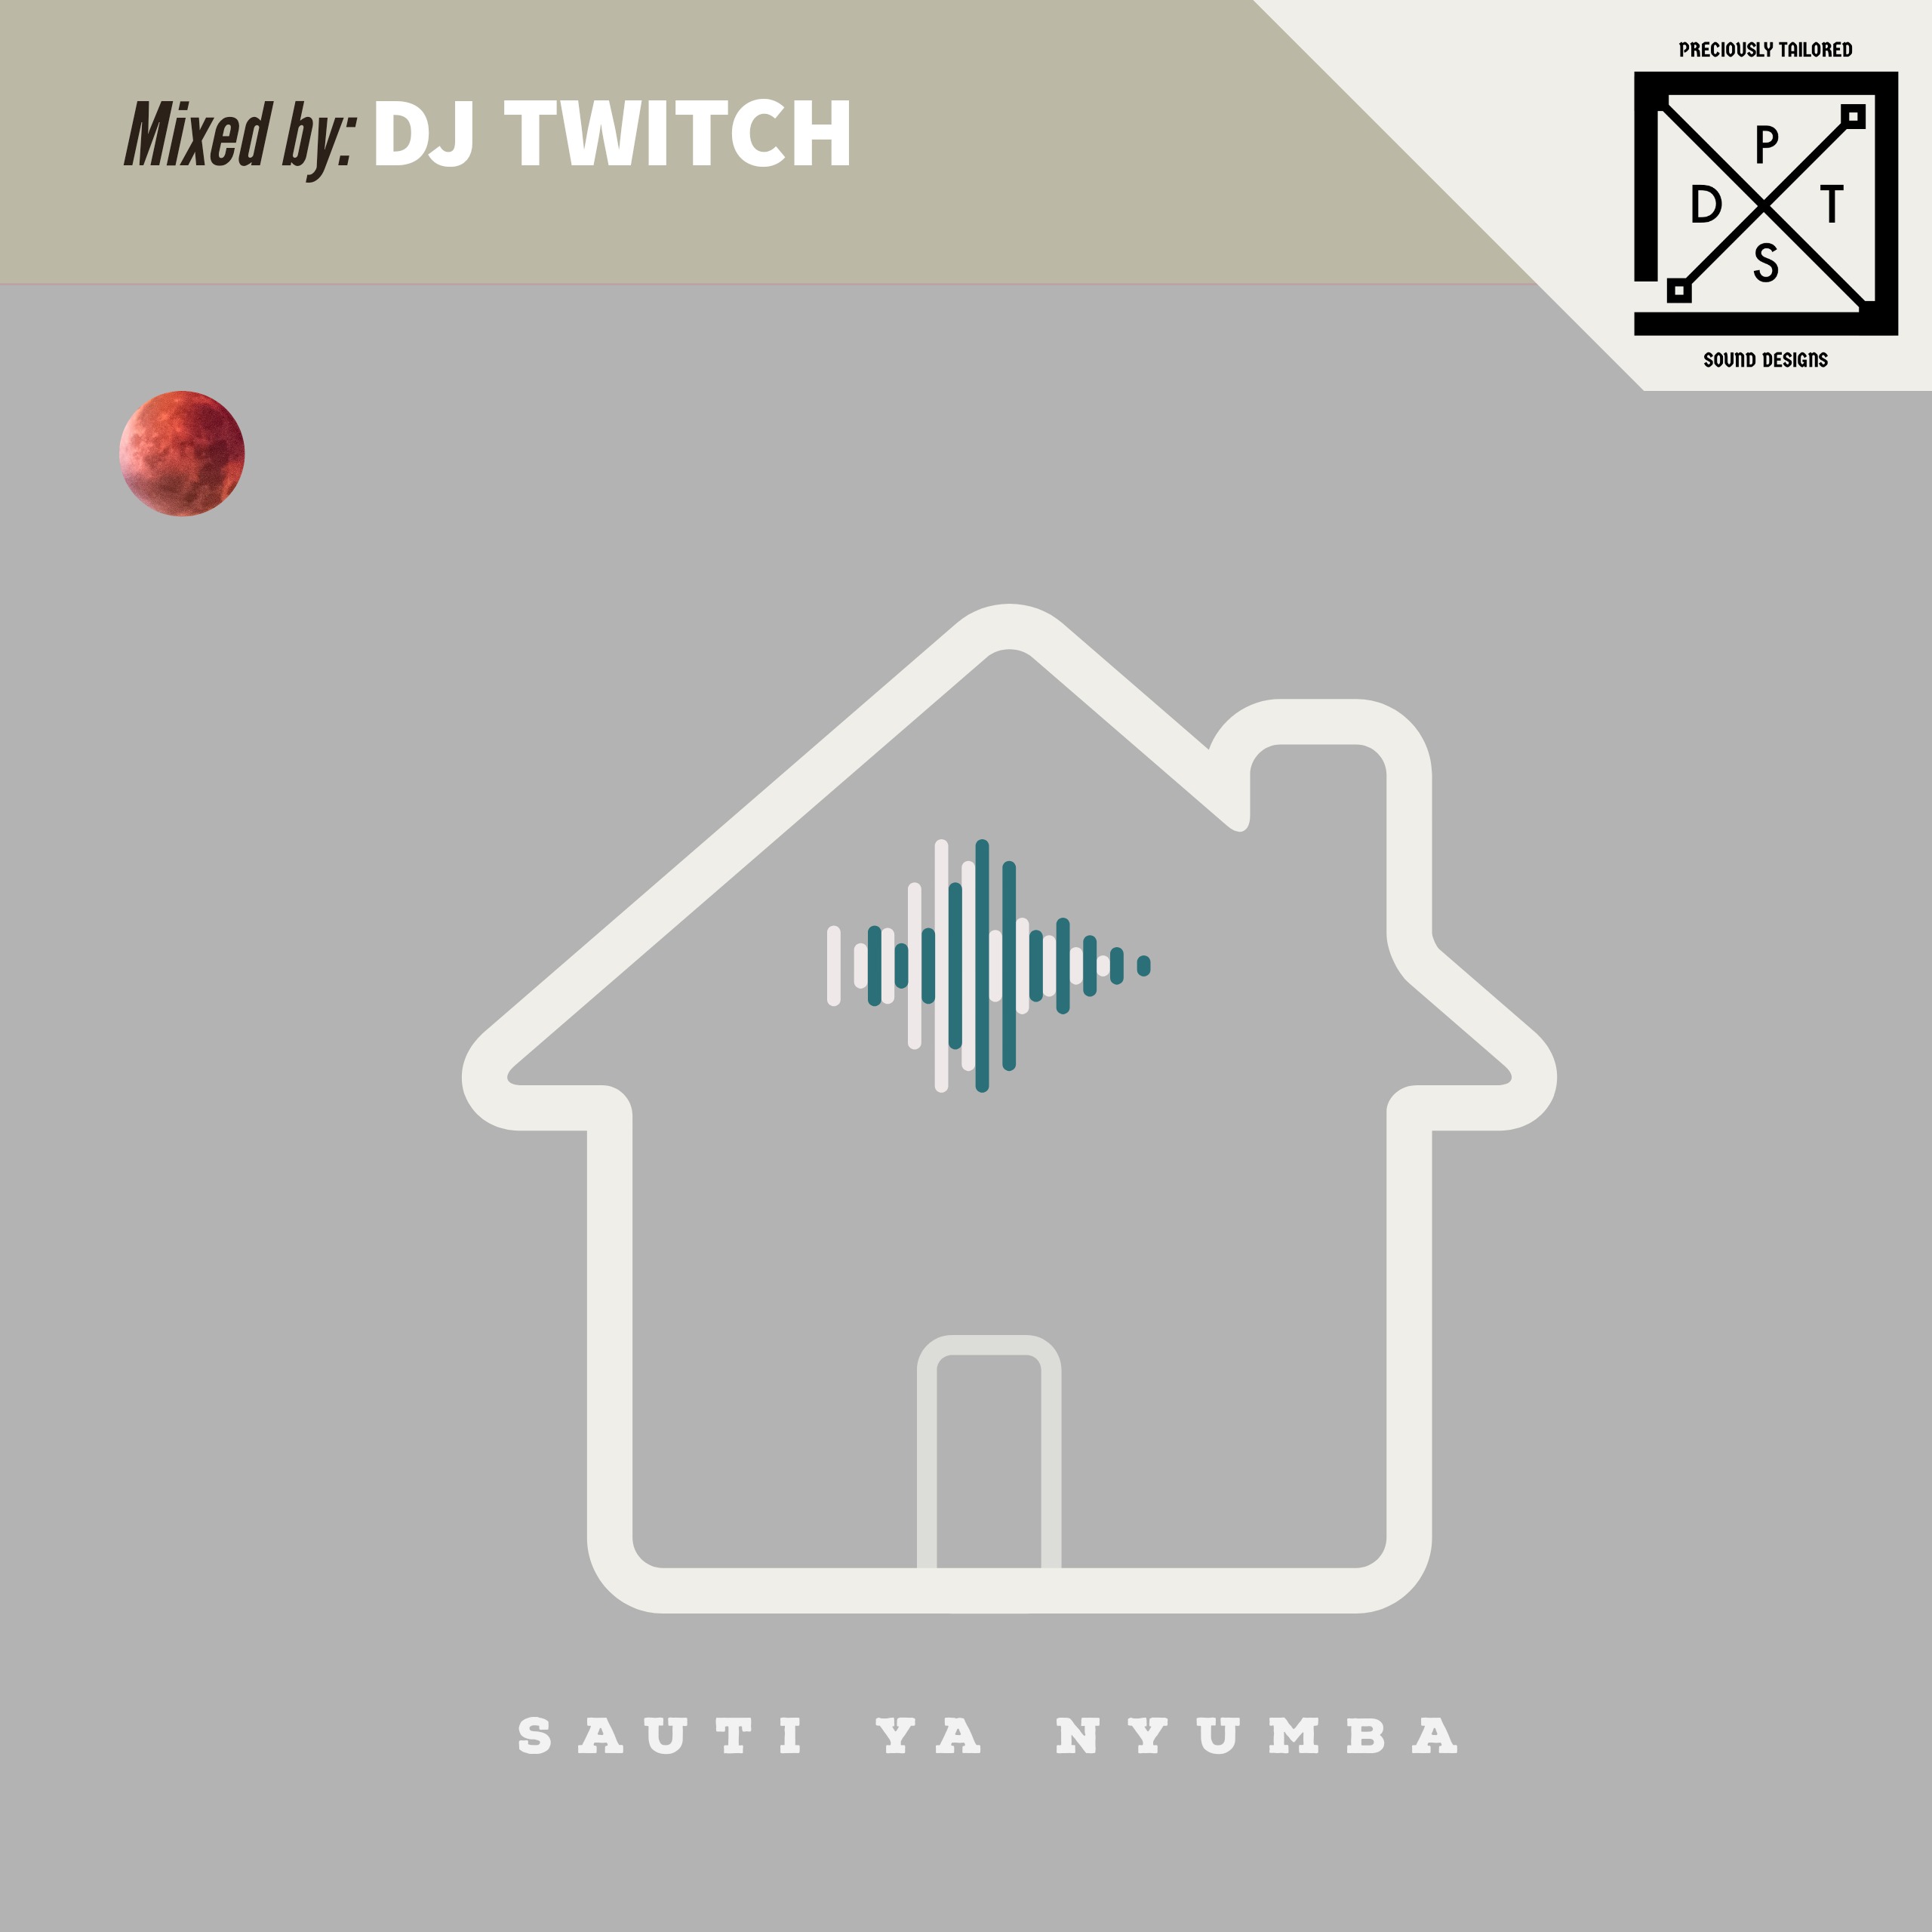 Episode 31: SAUTI YA NYUMBA Vol.31 curated by DJ Twitch